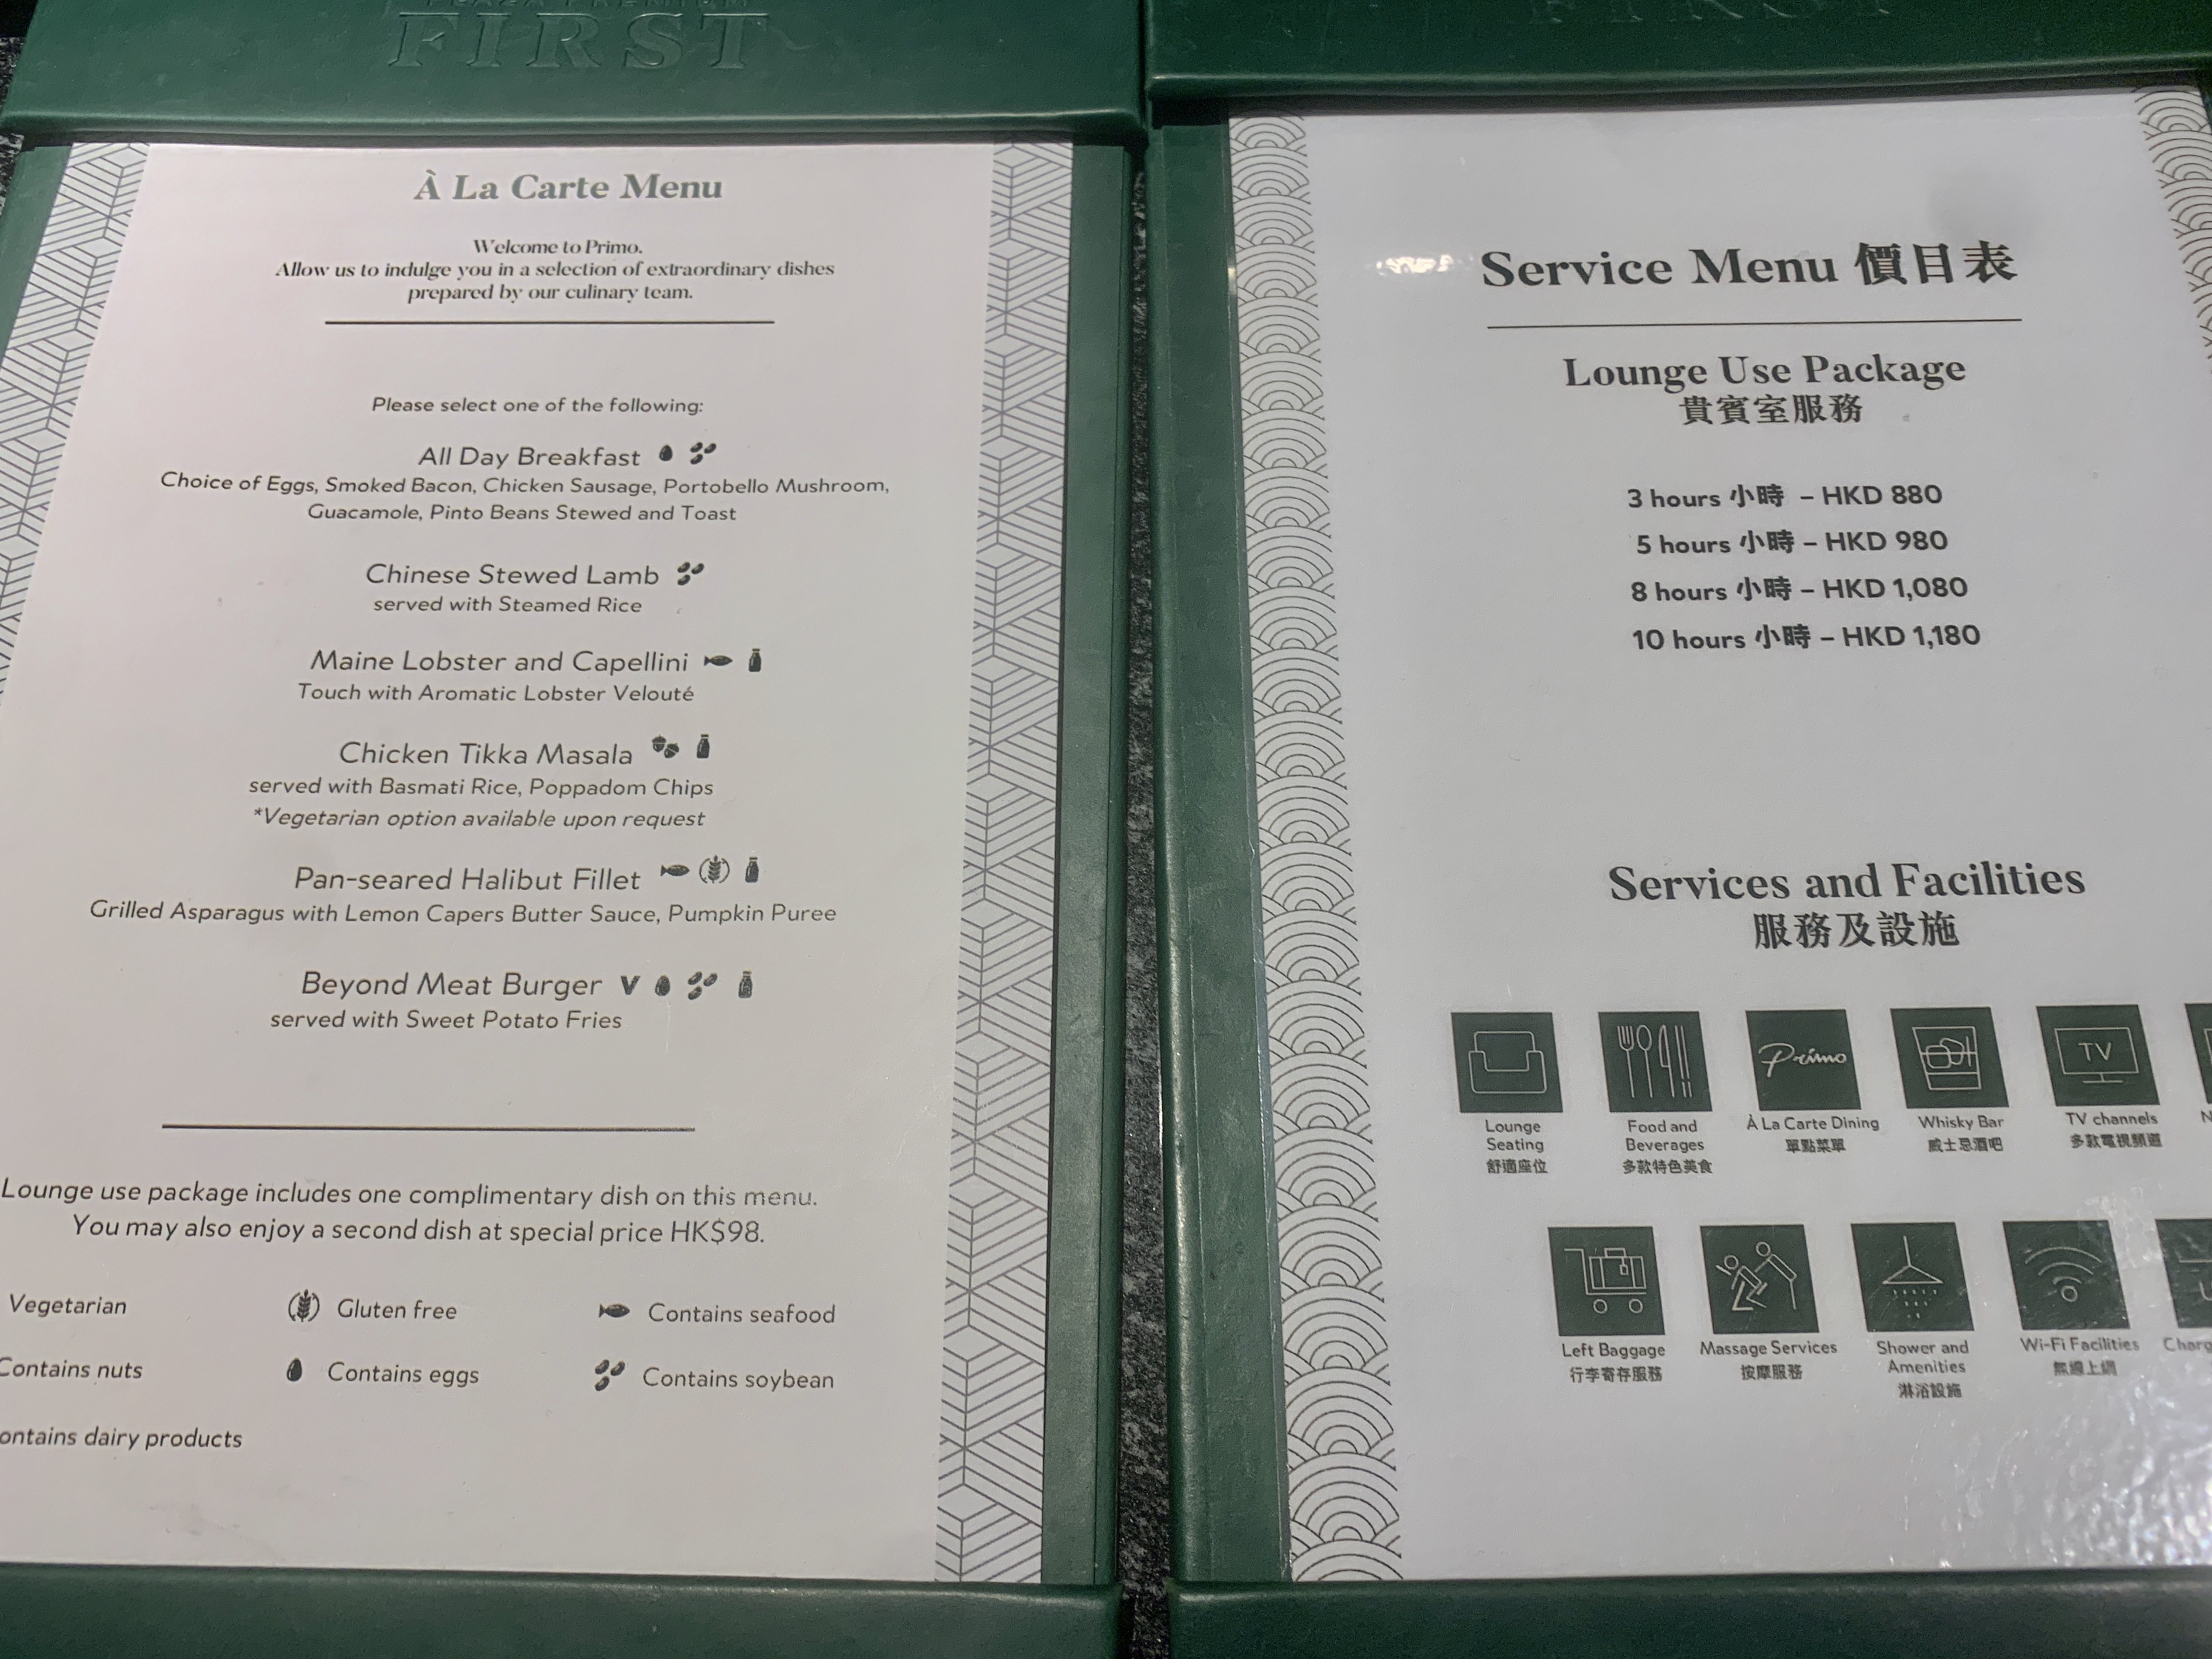 a menu in a green case